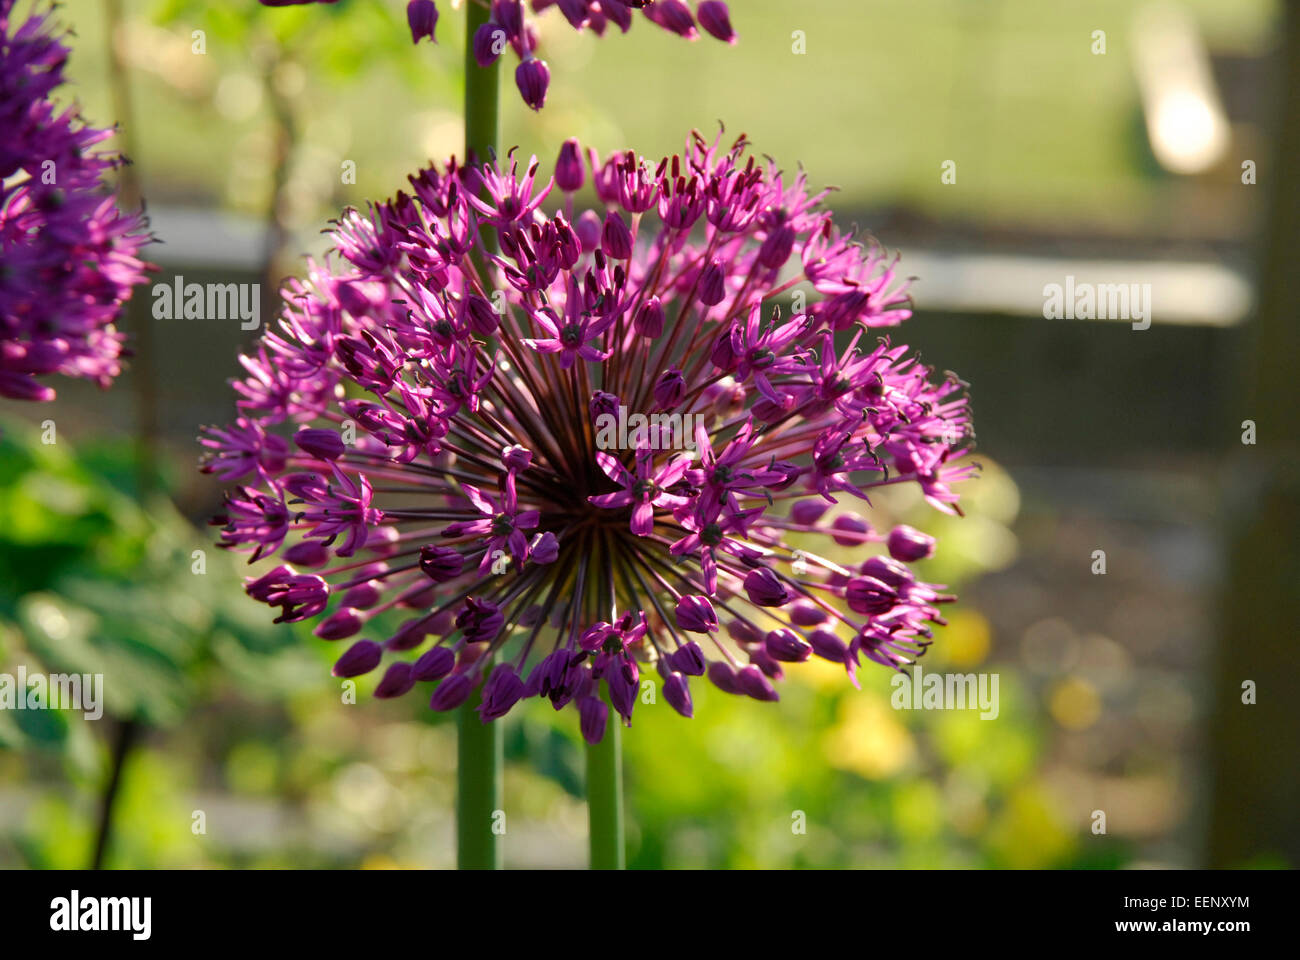 Allium Blumen vor einem grünen Hintergrund. Stockfoto